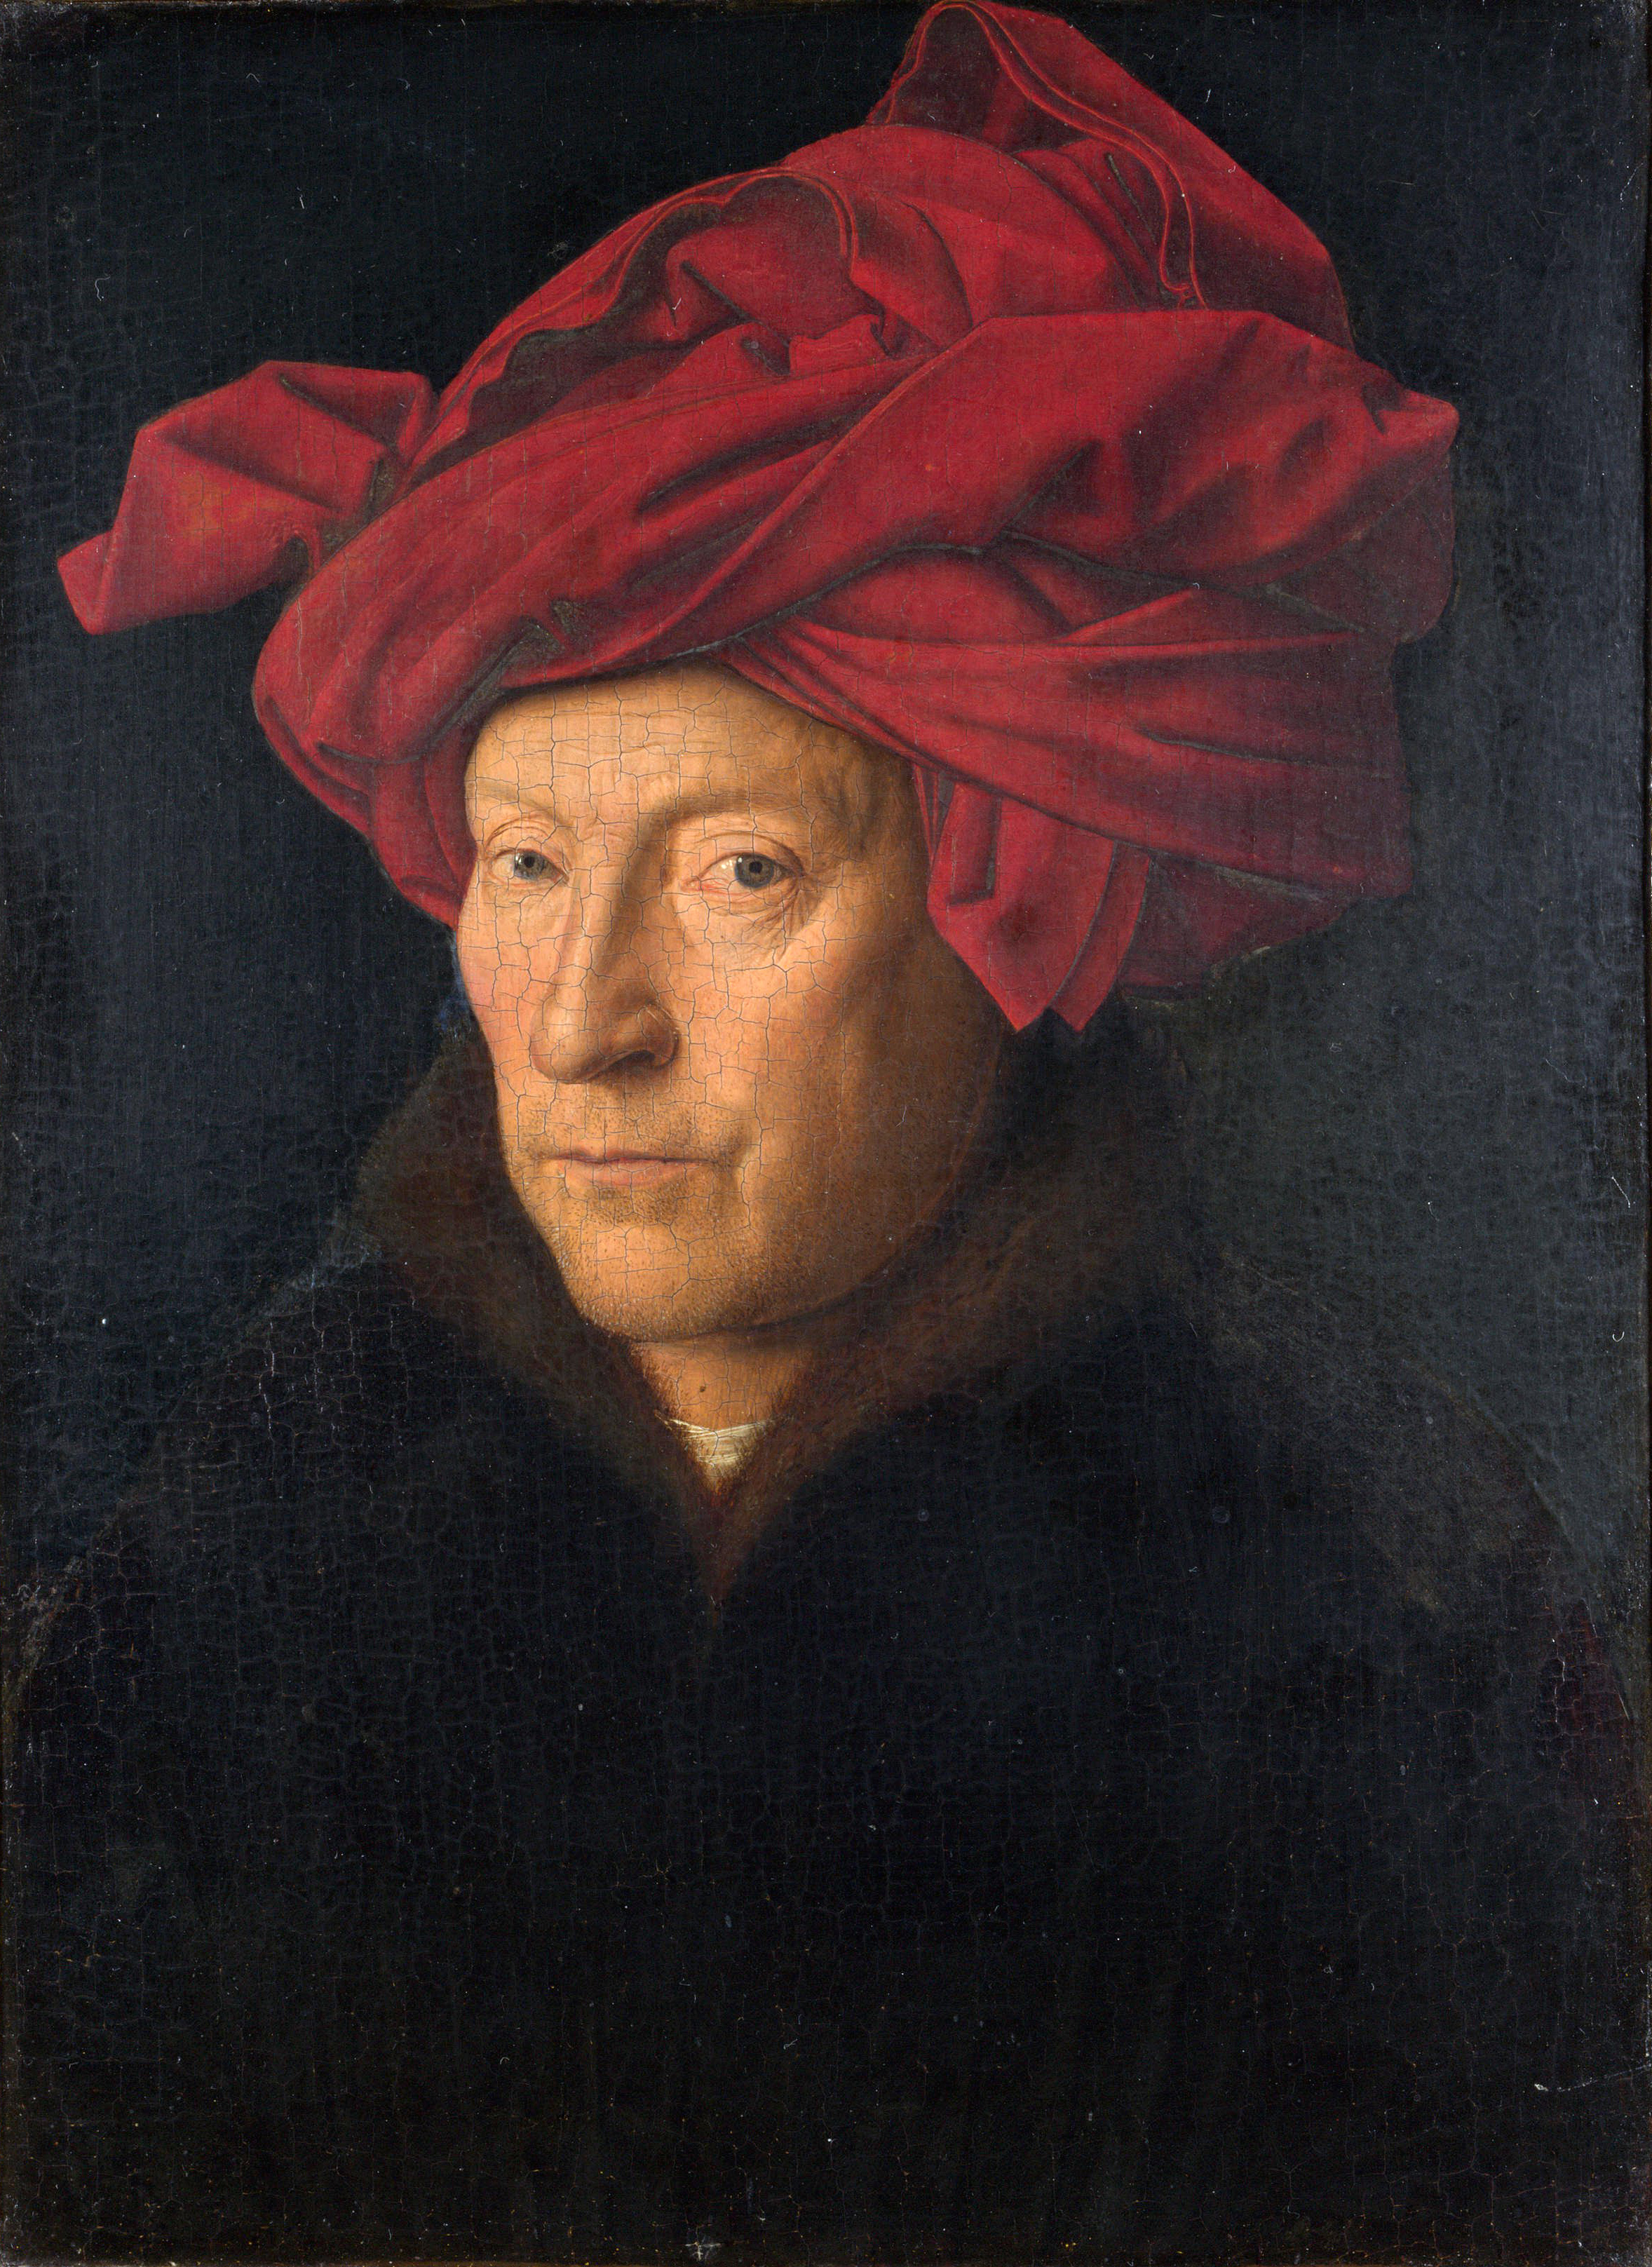 Ritratto di uomo con turbante rosso (autoritratto?) by Jan van Eyck - 1433 - 26 × 19 cm 